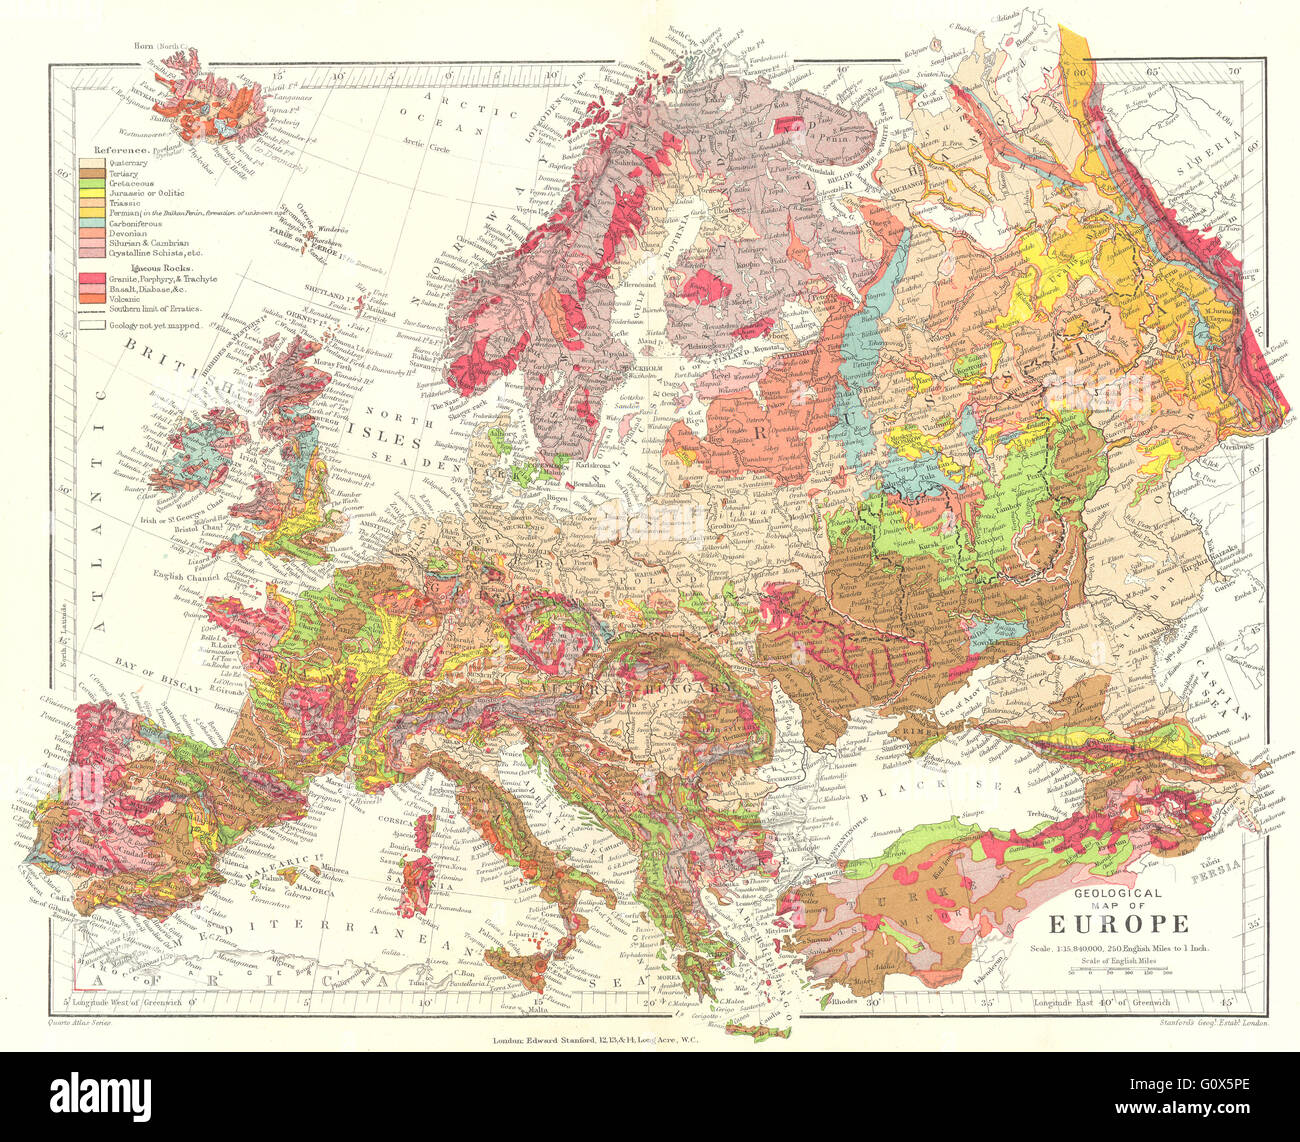 Europa: geologica terziaria Triassico Giurassico Cretaceo &c. STANFORD, 1906 Mappa Foto Stock